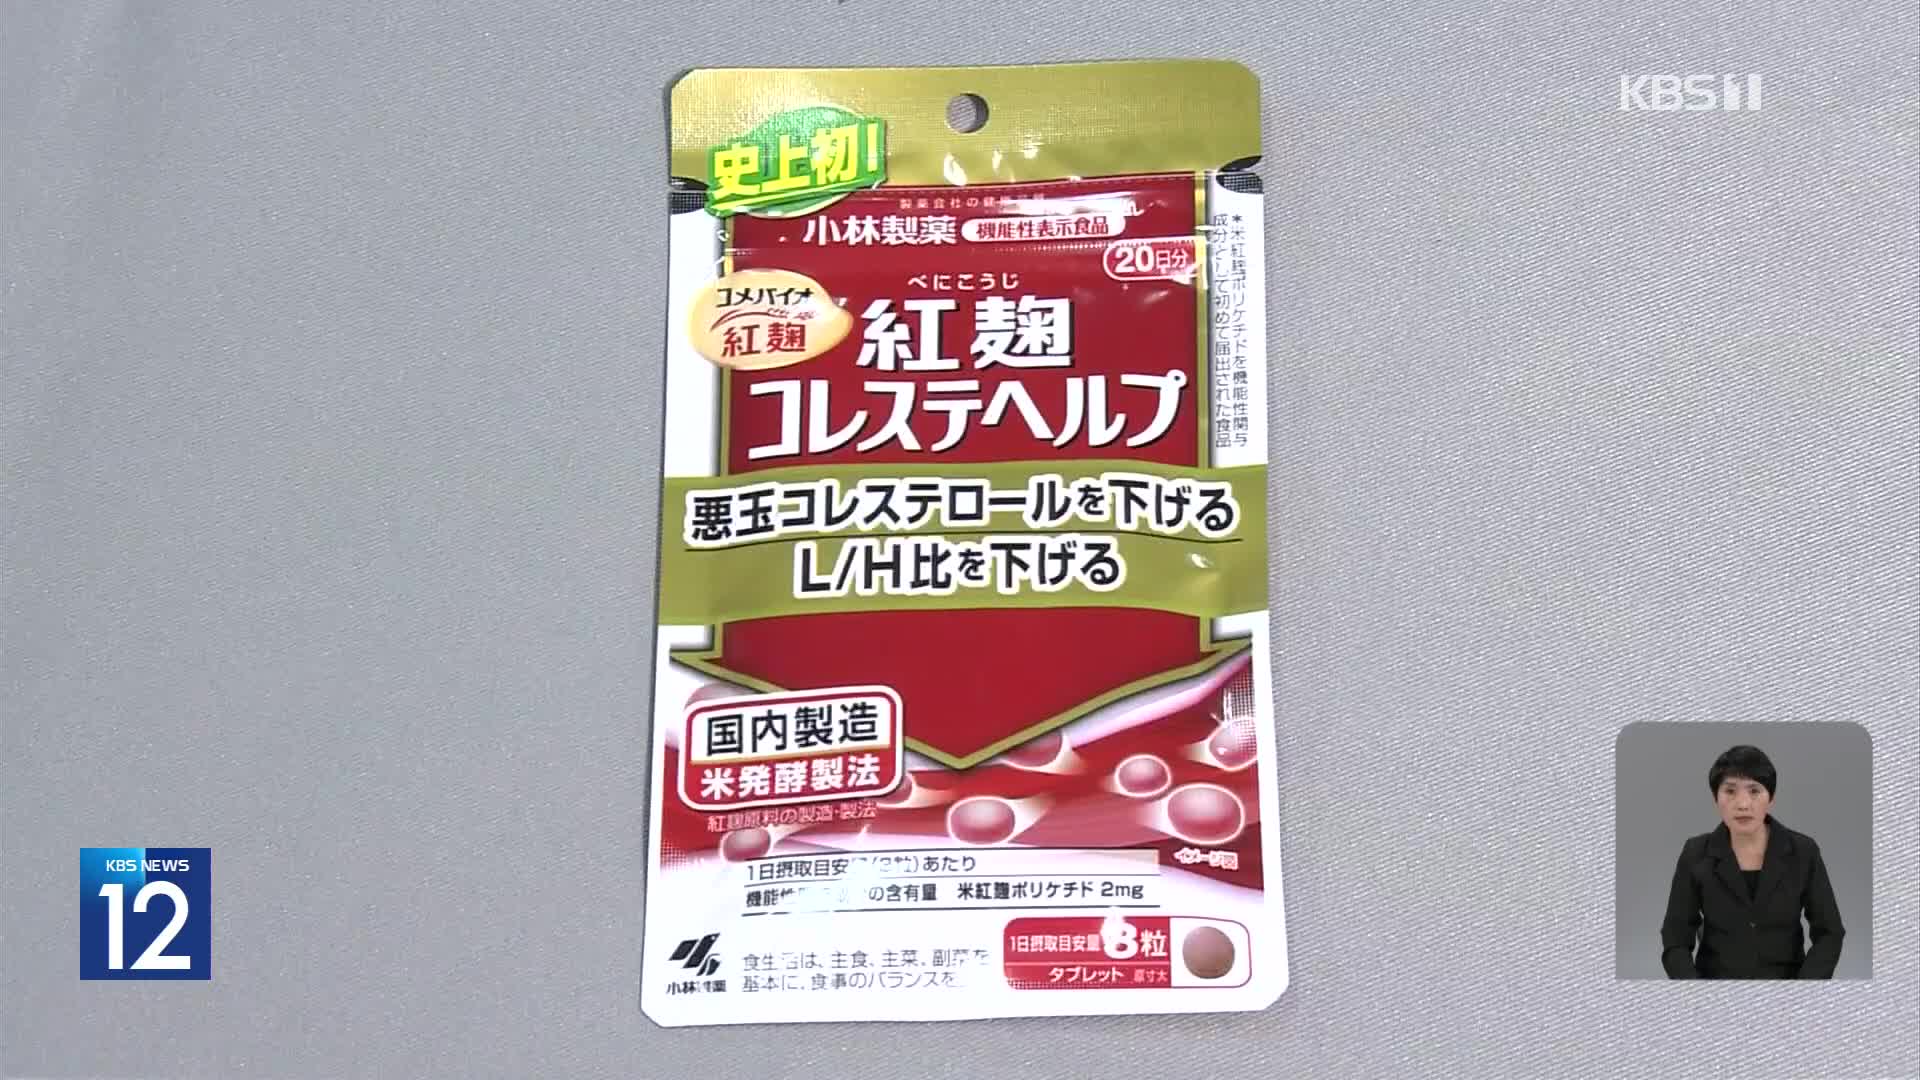 일본, ‘붉은 누룩’ 건강식품 섭취 후 사망 2명으로 늘어